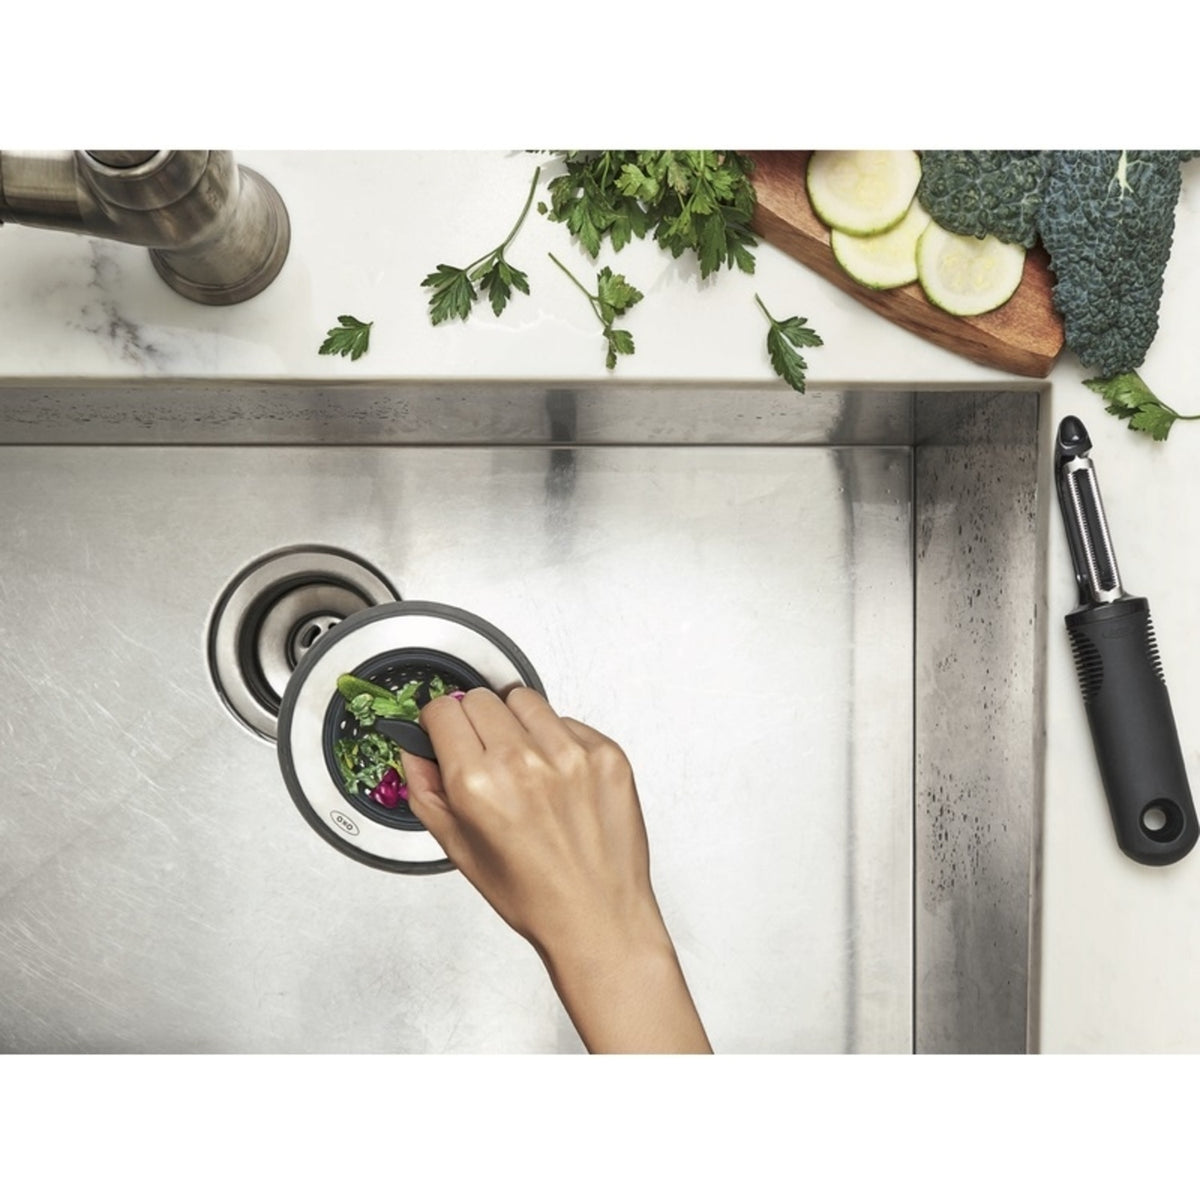 OXO Good Grips 13259500 Kitchen Sink Strainer, Satin Nickel